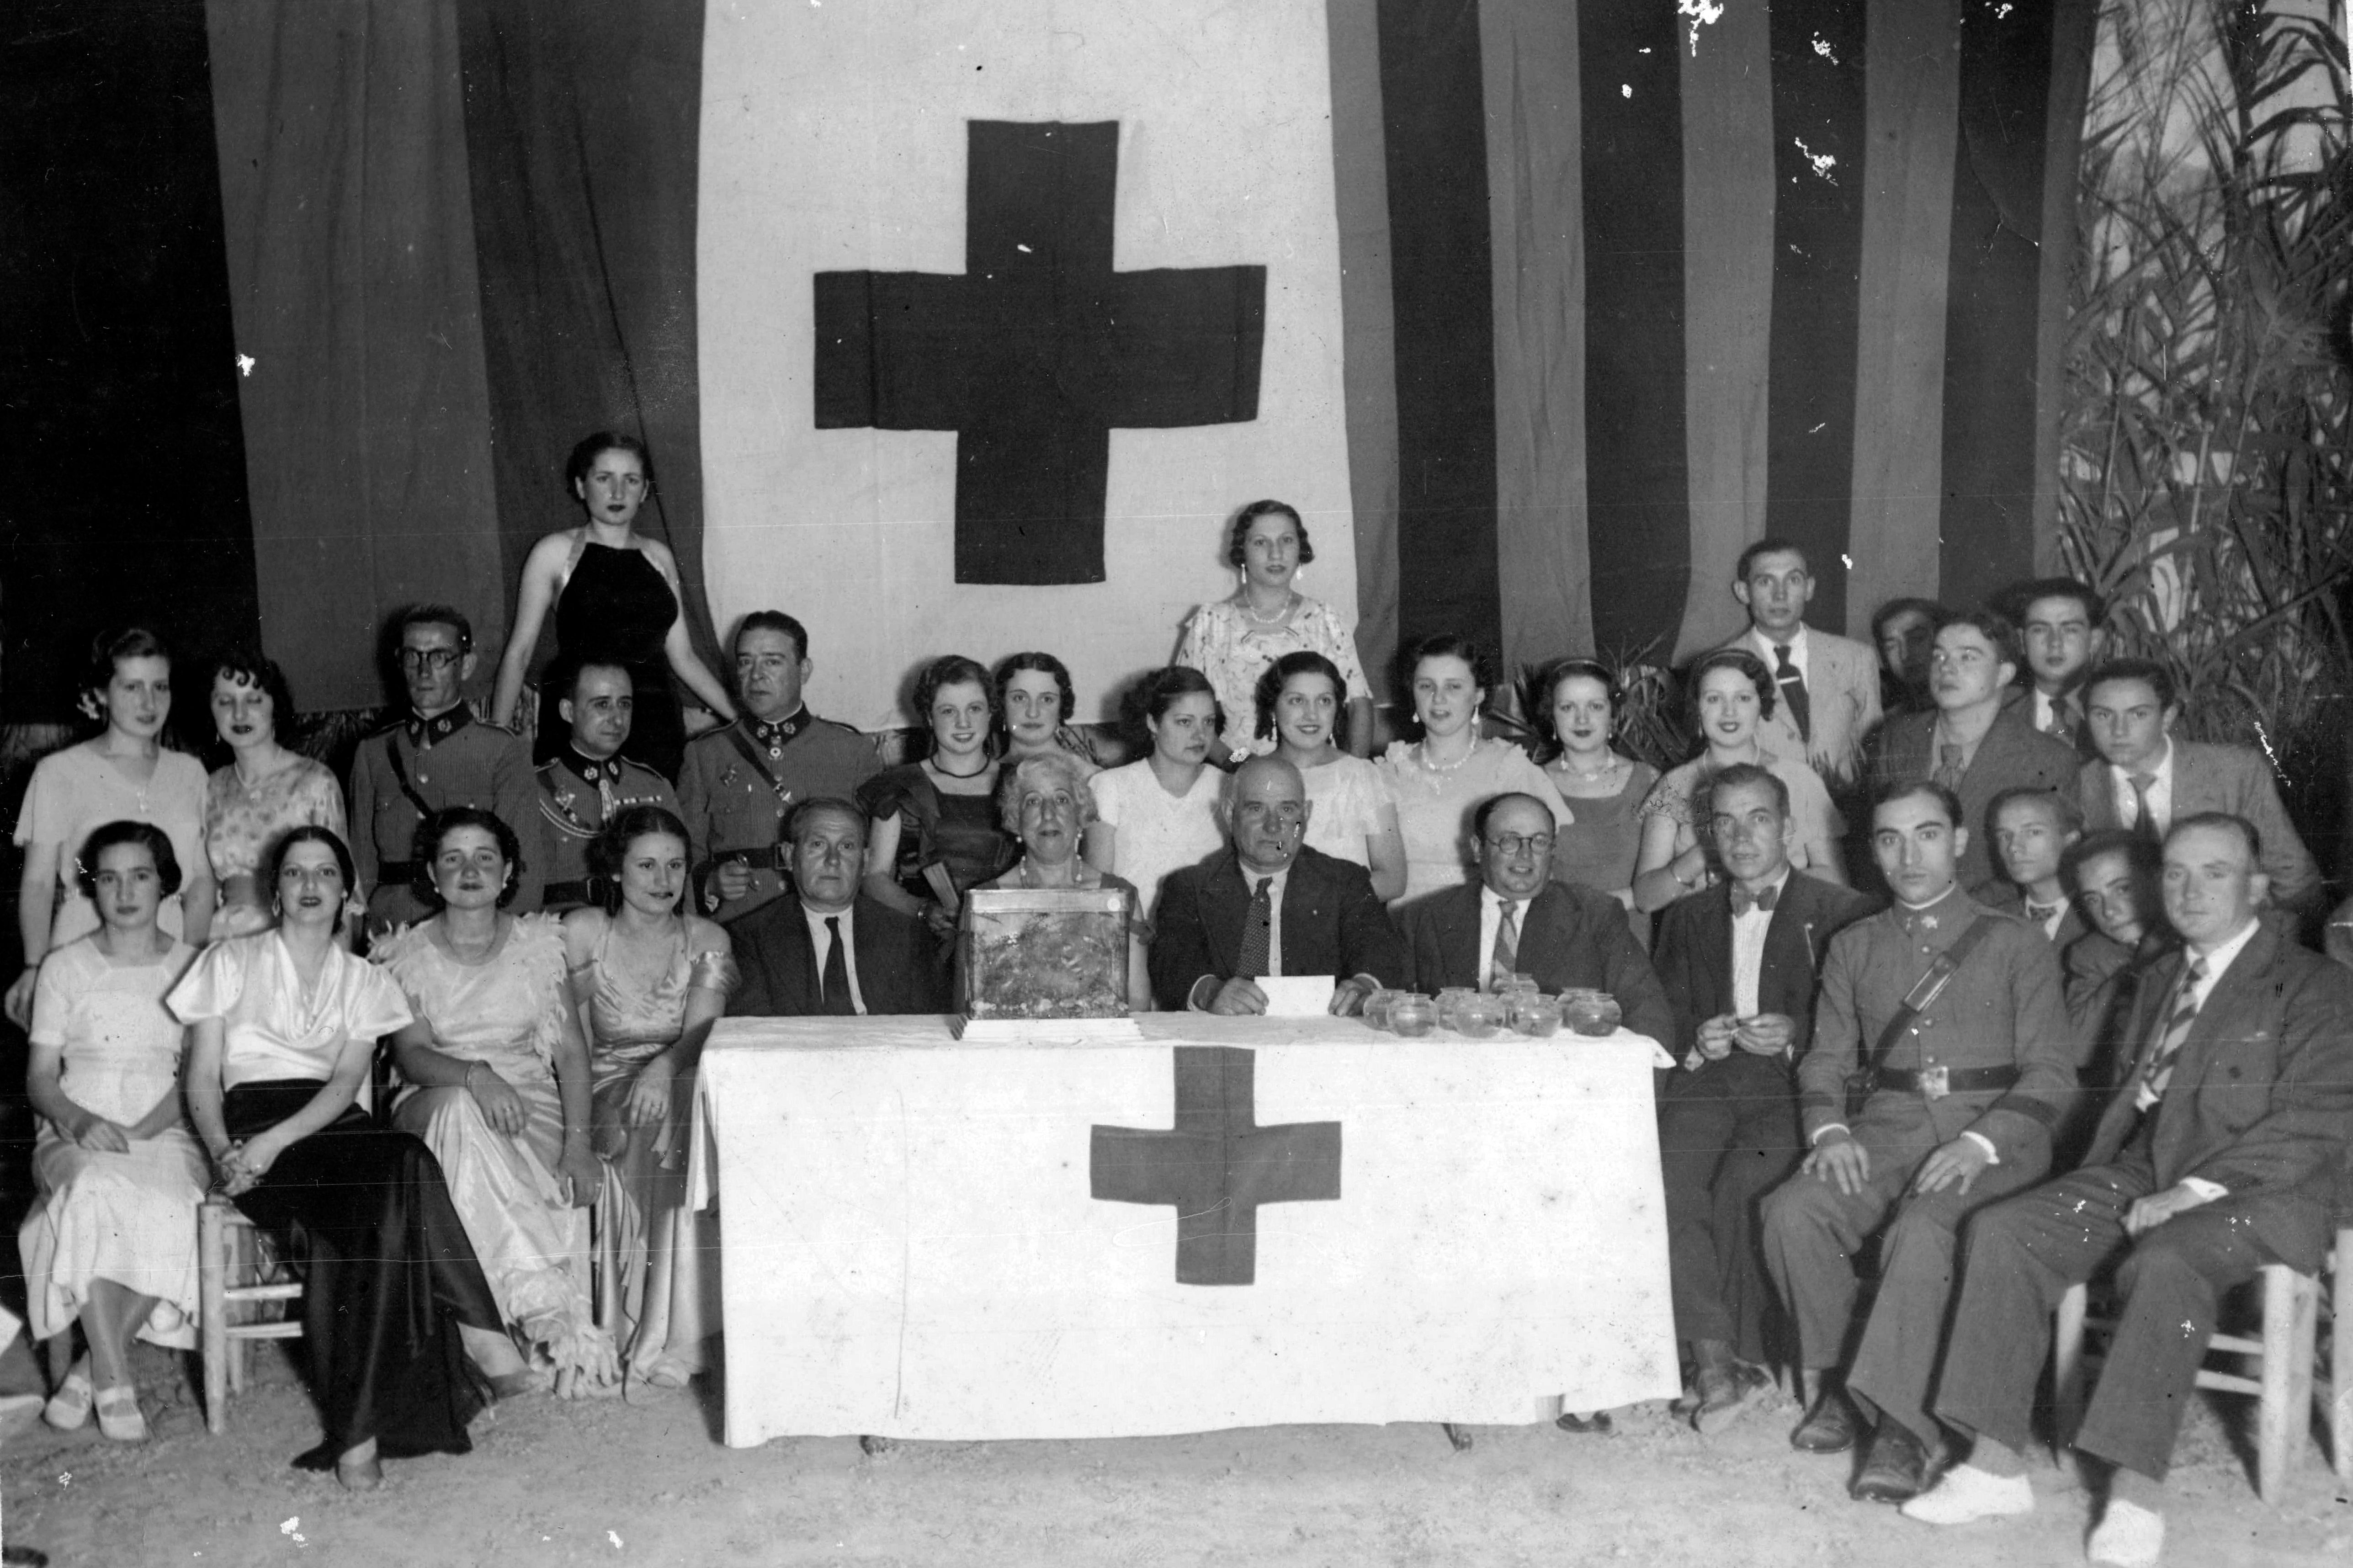 Festa Bandereta als anys 40. Foto: Creu Roja